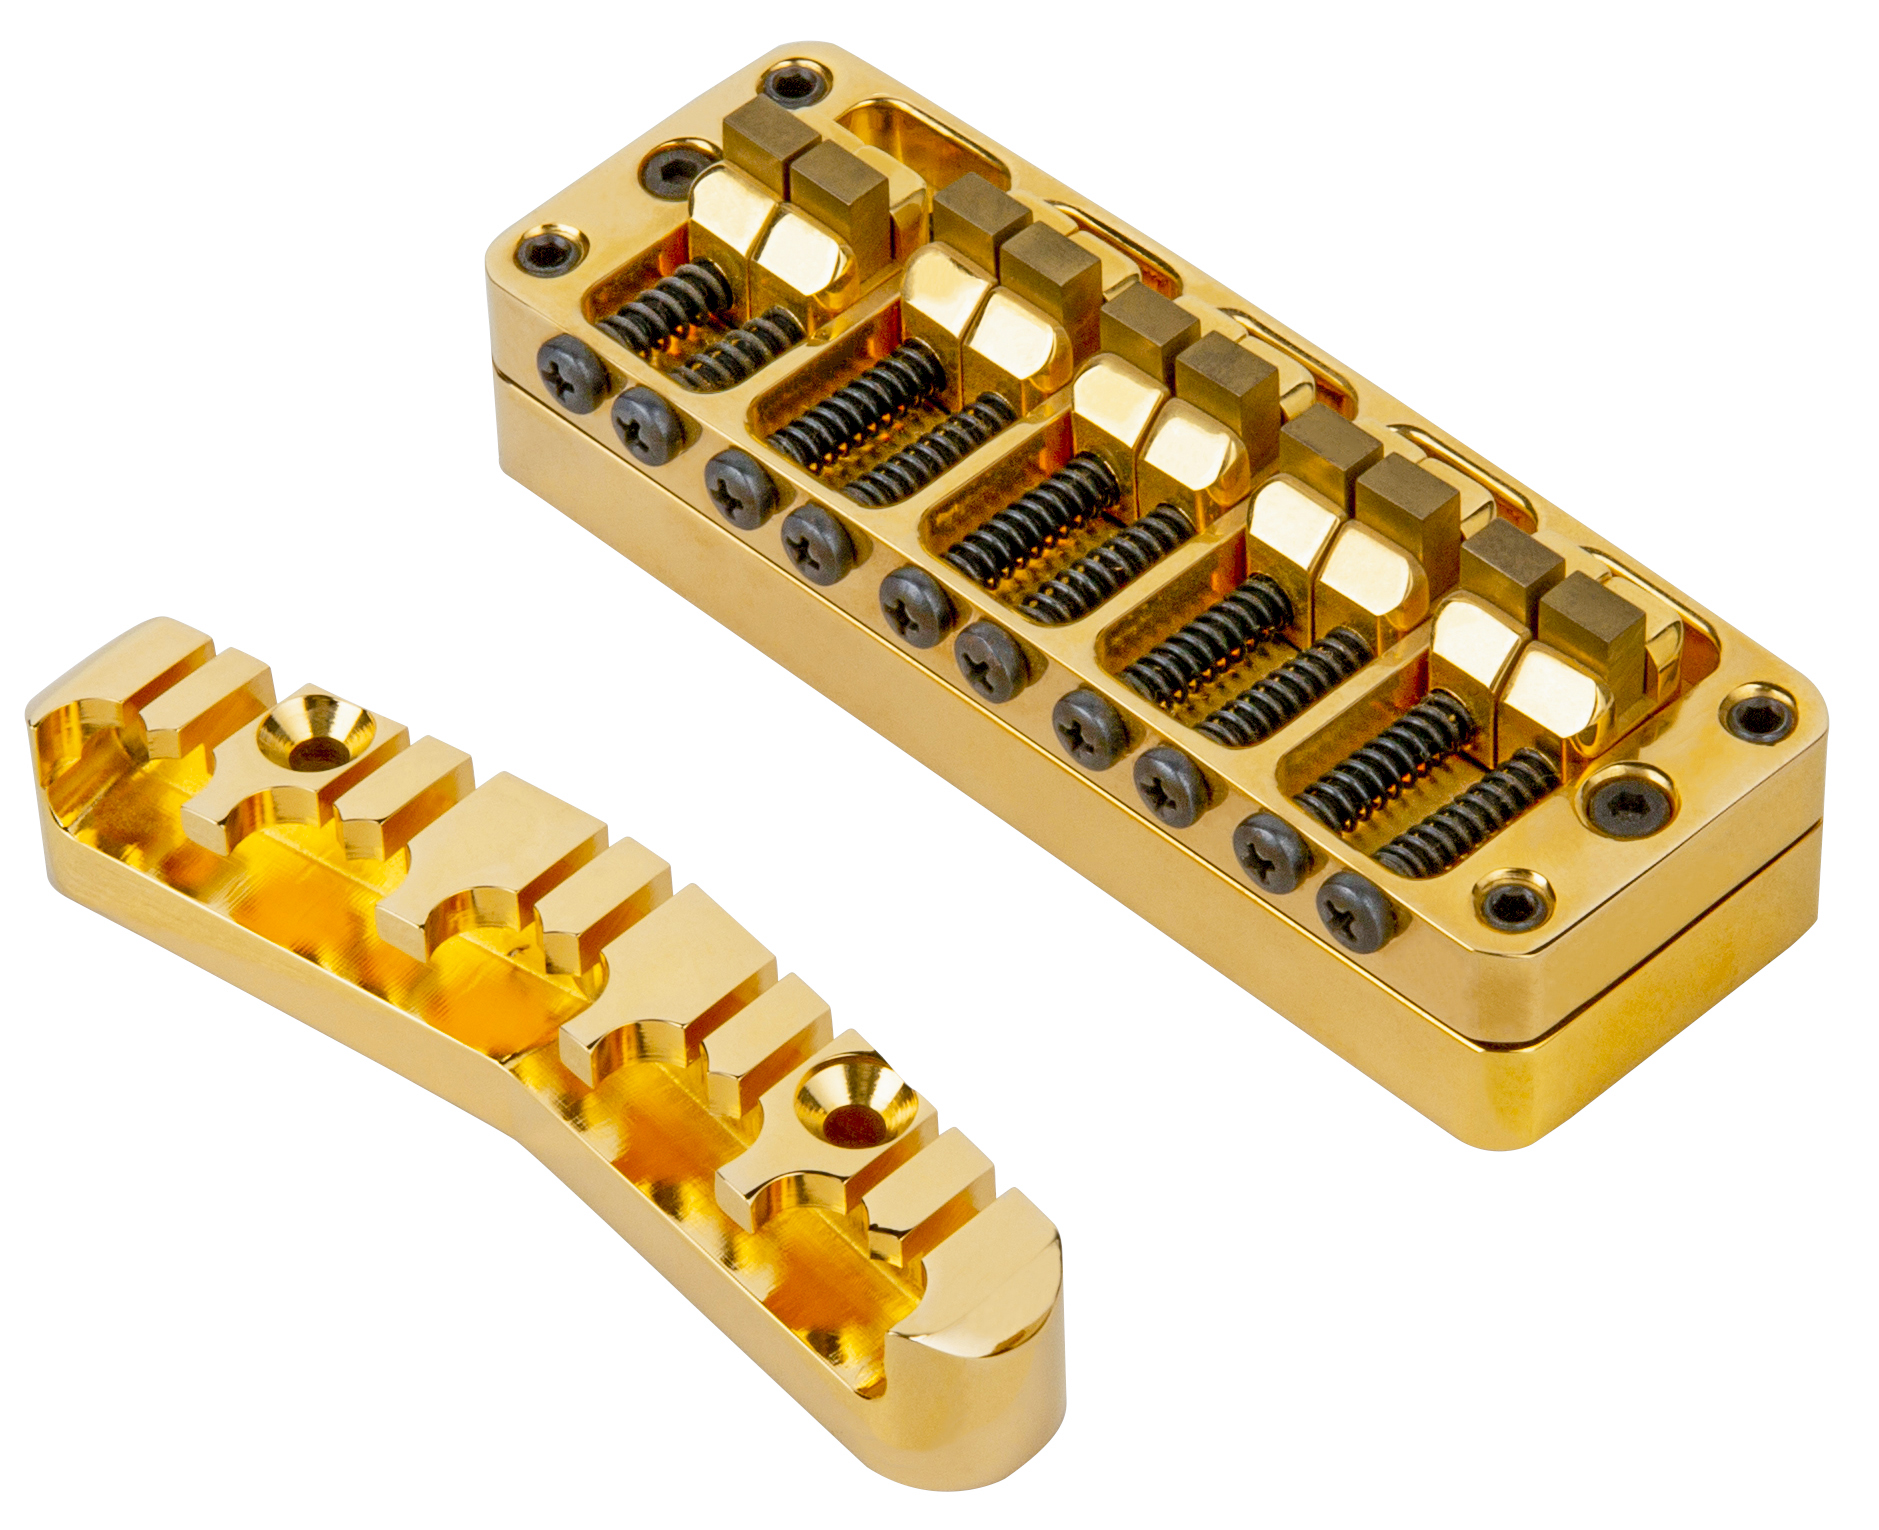 Warwick Parts - 2-Piece 3D Bridge & Tailpiece, 10-String, Brass - Gold